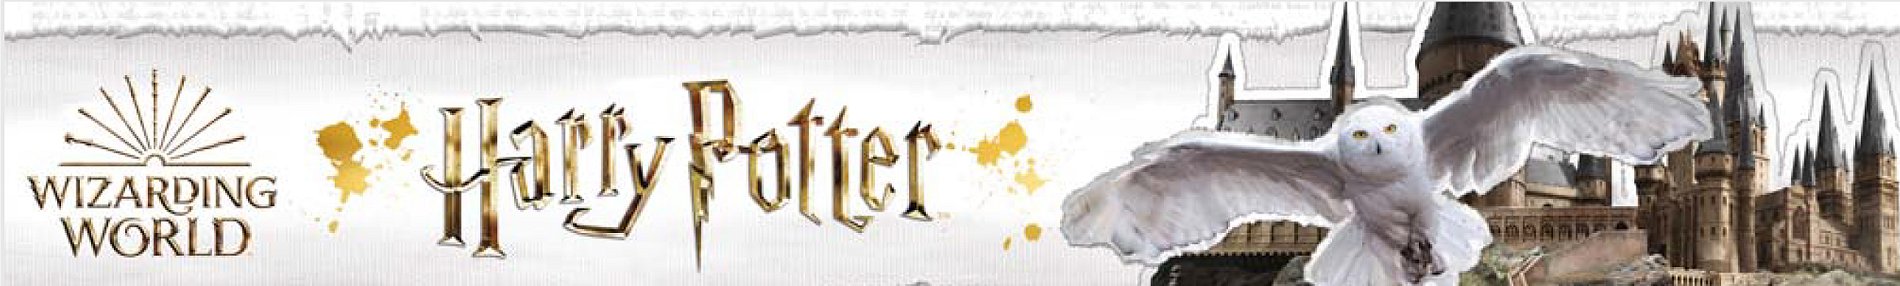 Promo Cartable Edwige Harry Potter chez Carrefour